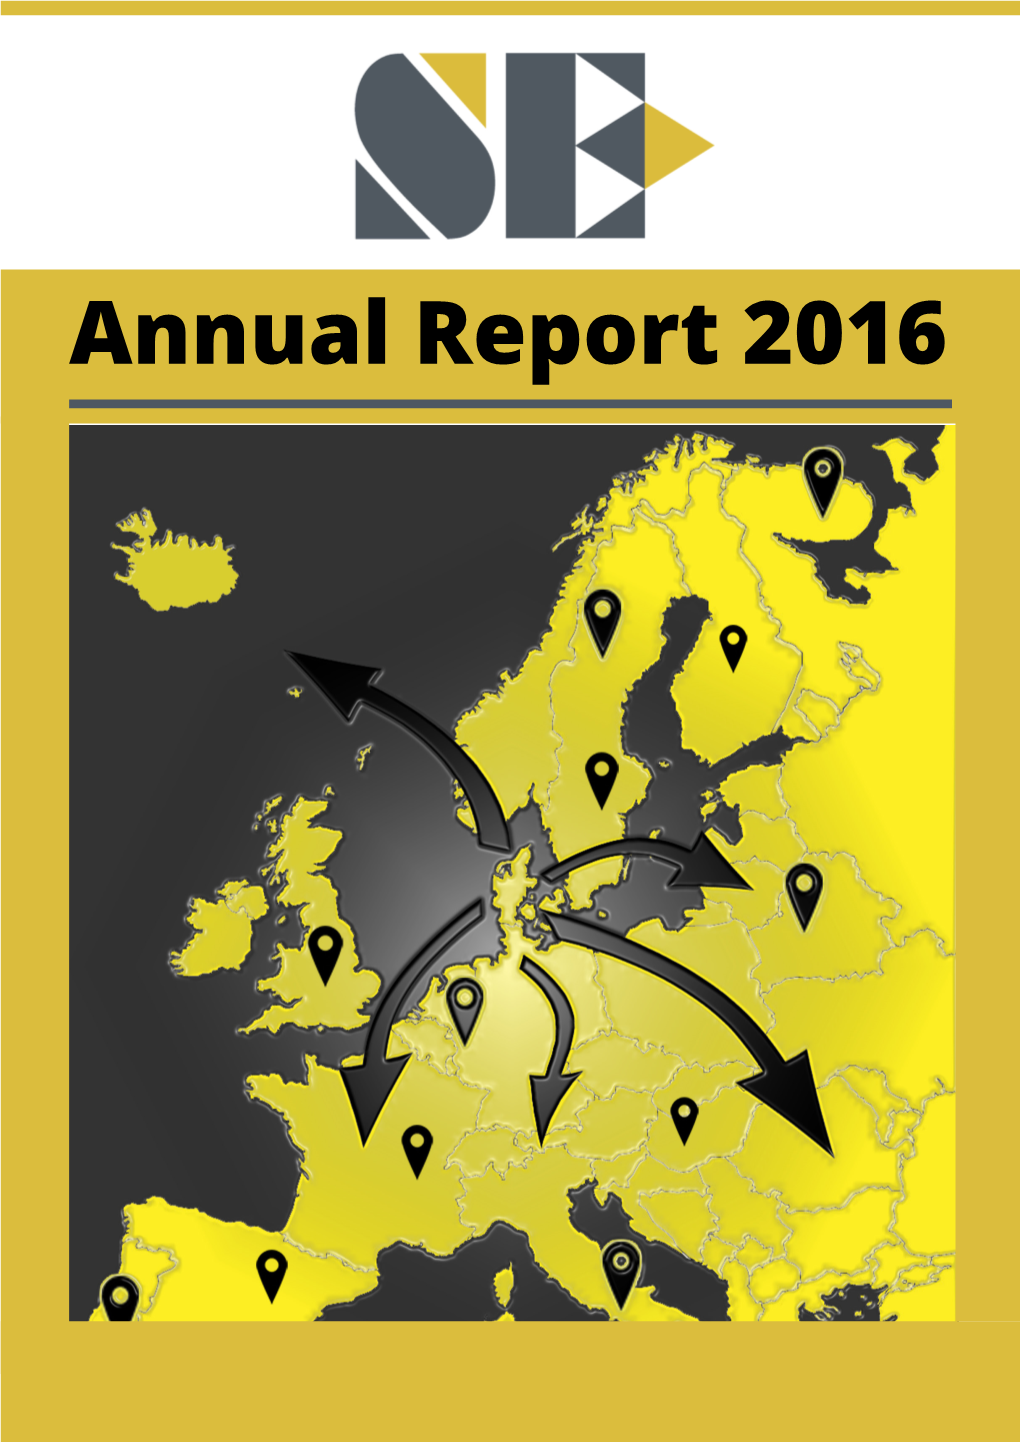 Annual Report 2016 Index